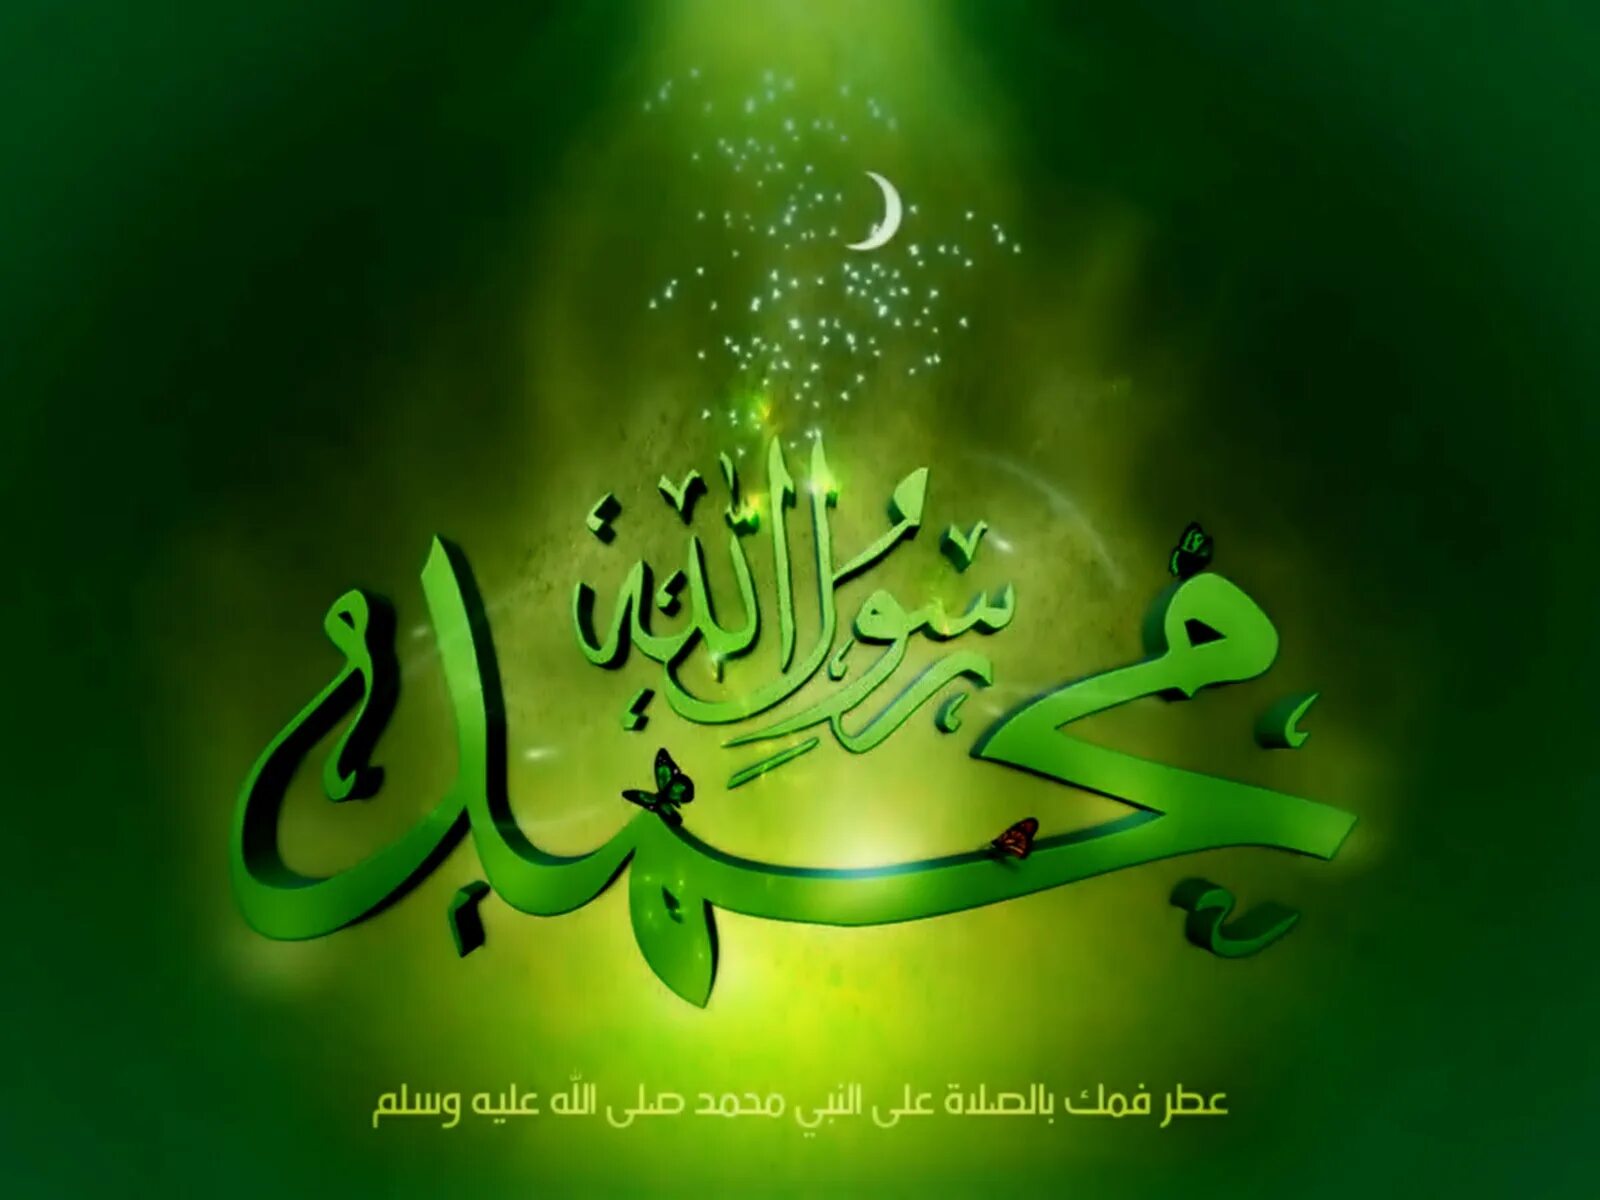 Пророк на арабском языке. Мухаммед пророк на арабском. Мухаммад на арабском языке. Имя пророка Мухаммеда на арабском. Пророк Мухаммед надпись на арабском.